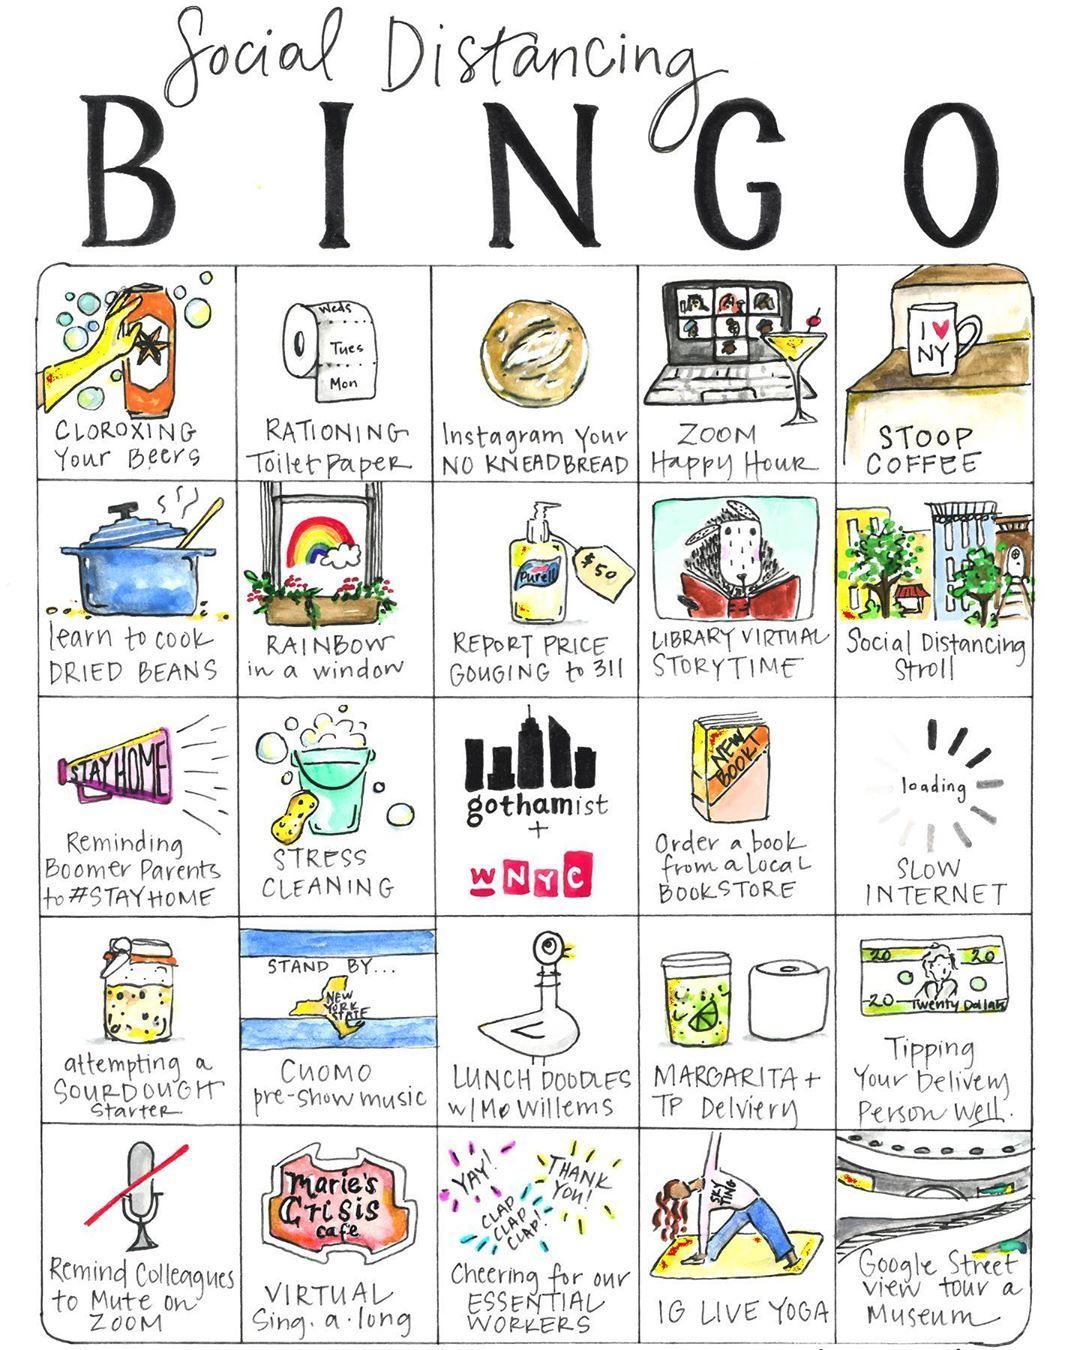 Amigo bingo cards